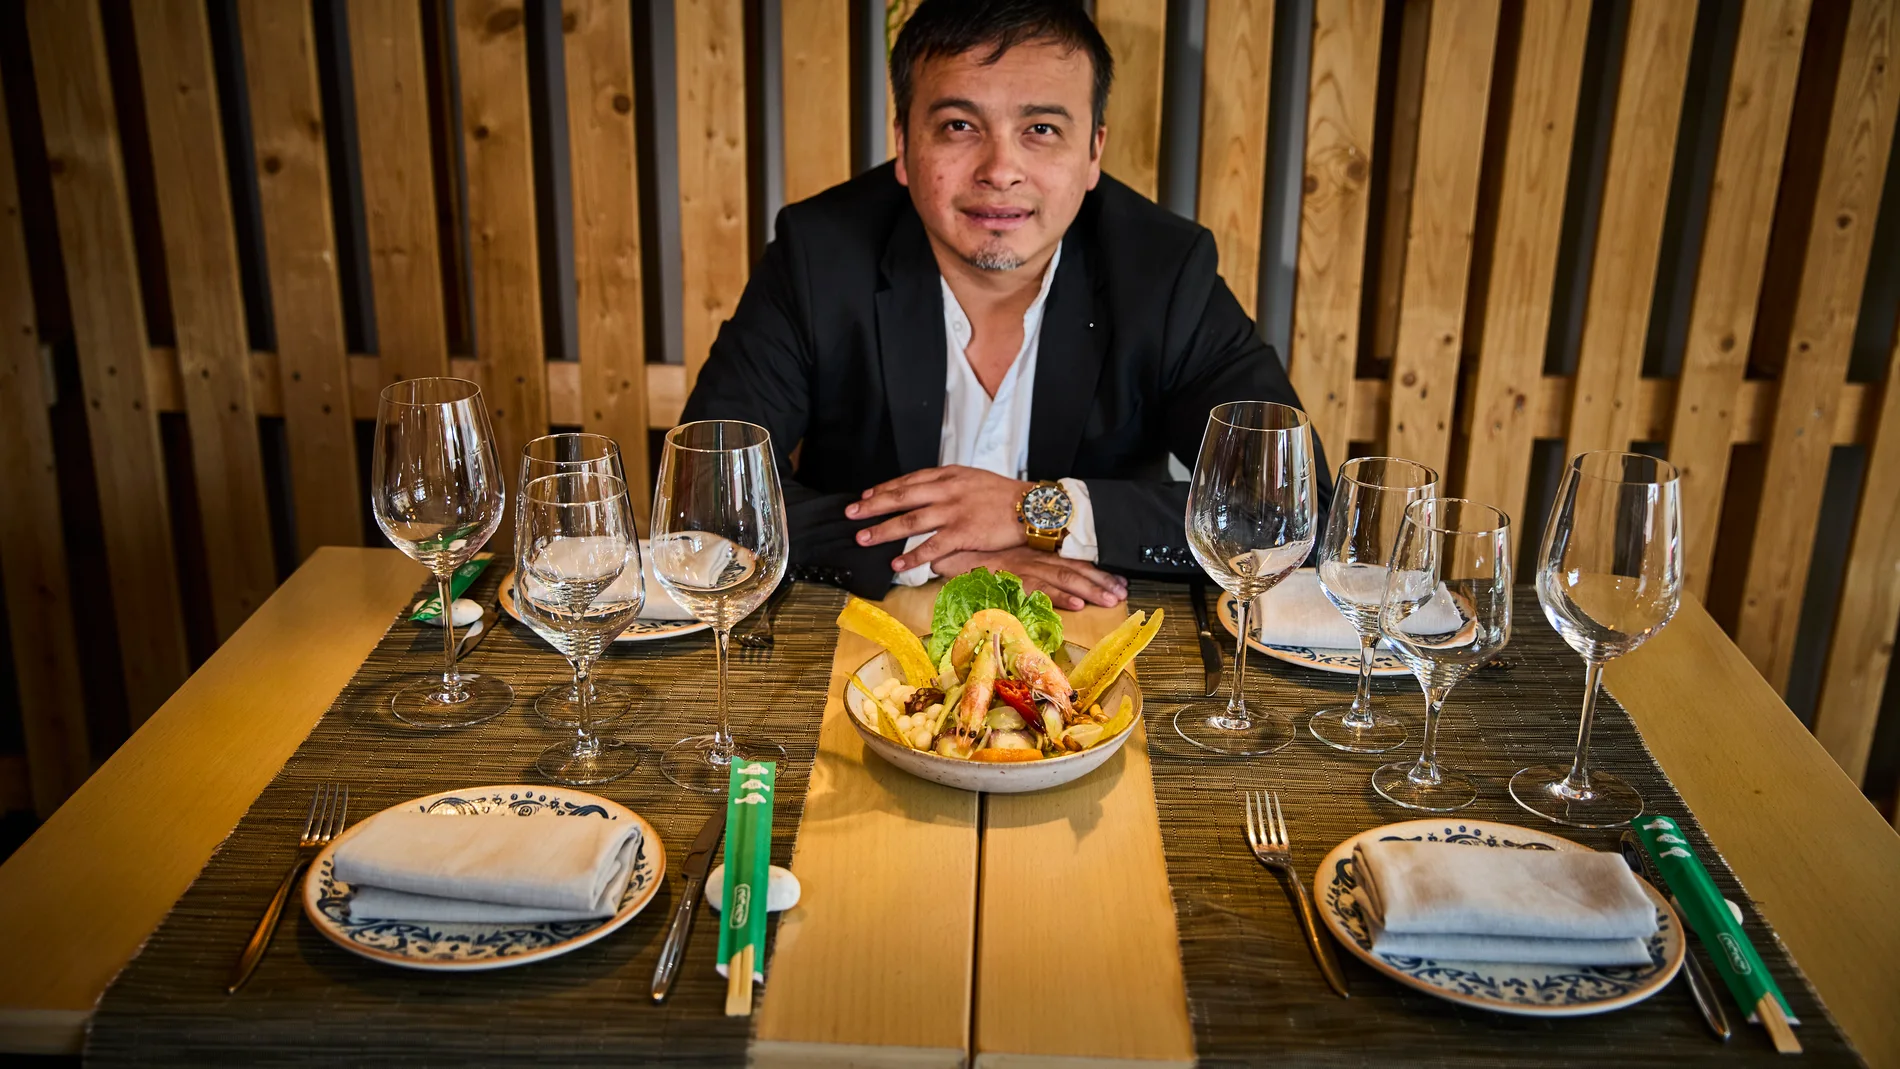 Carlos Pérez, Chef del restaurante Oceanika nos muestra su ceviche como plato estrella.